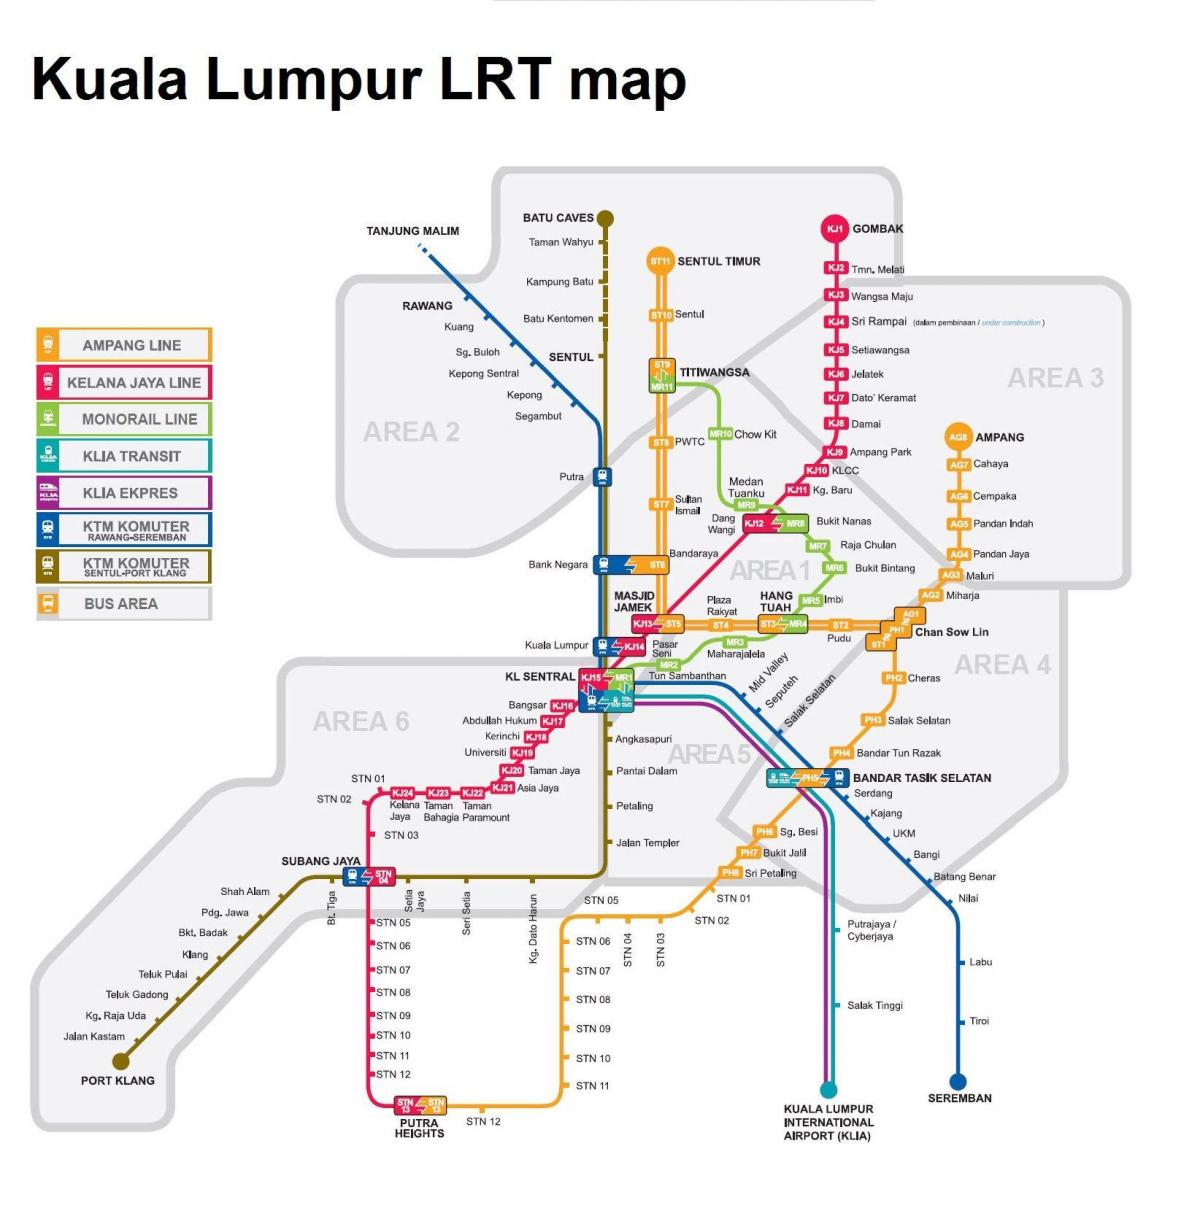 залізничний карті Куала-Лумпура